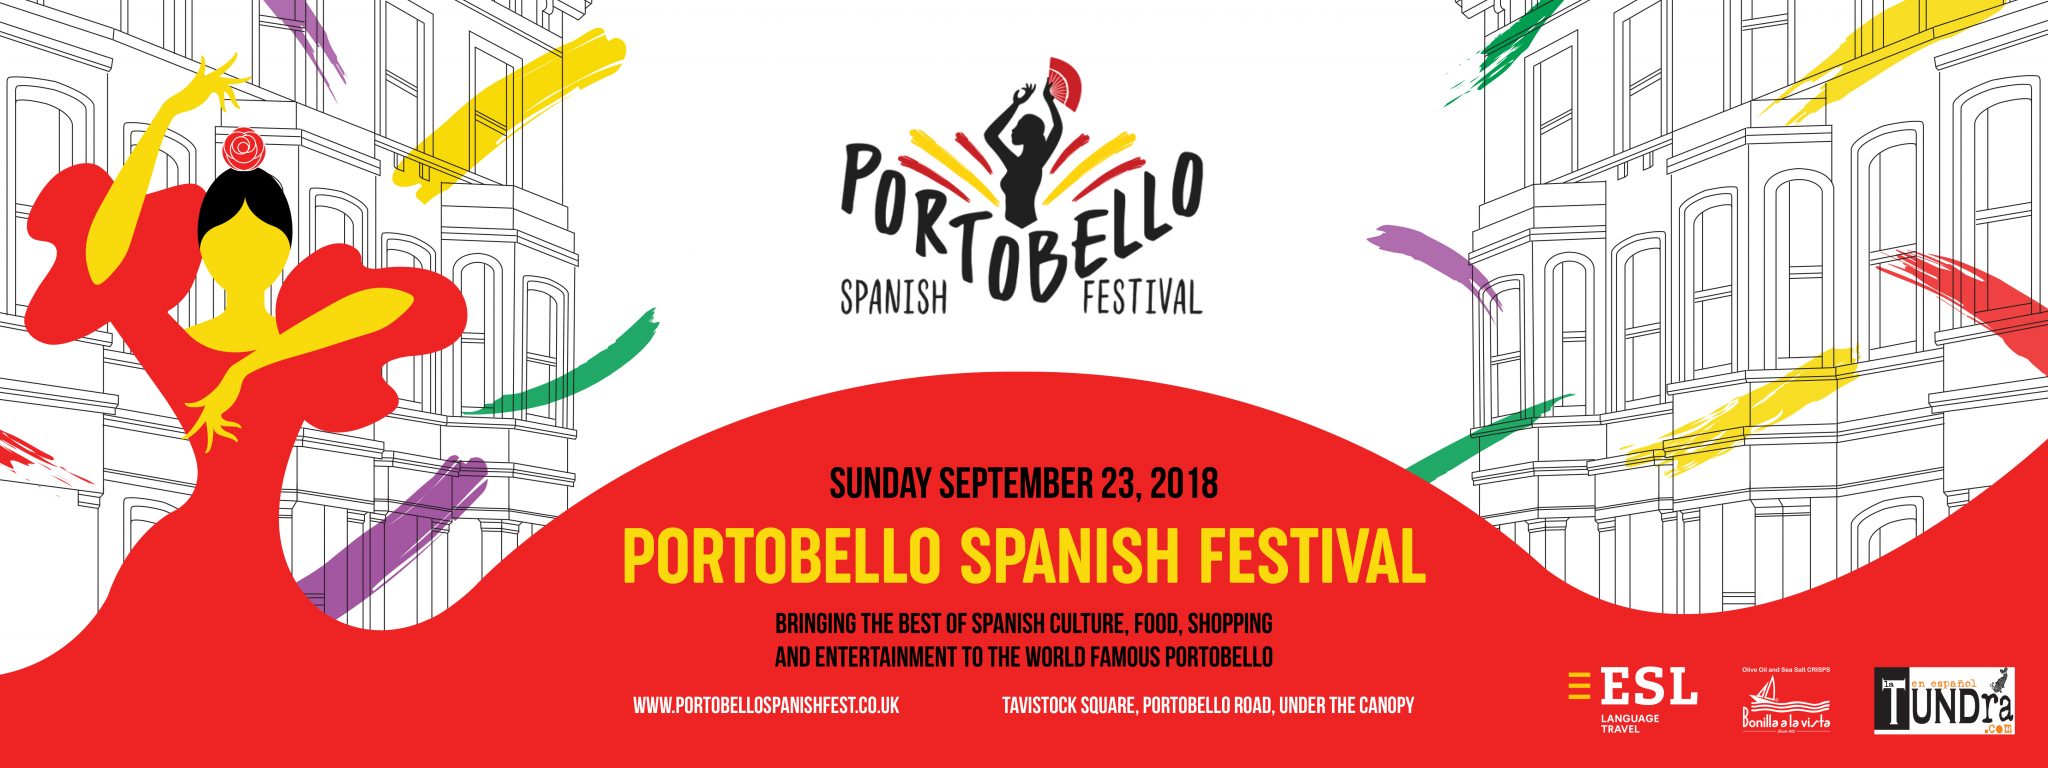 Visit The Portobello Spanish Festival